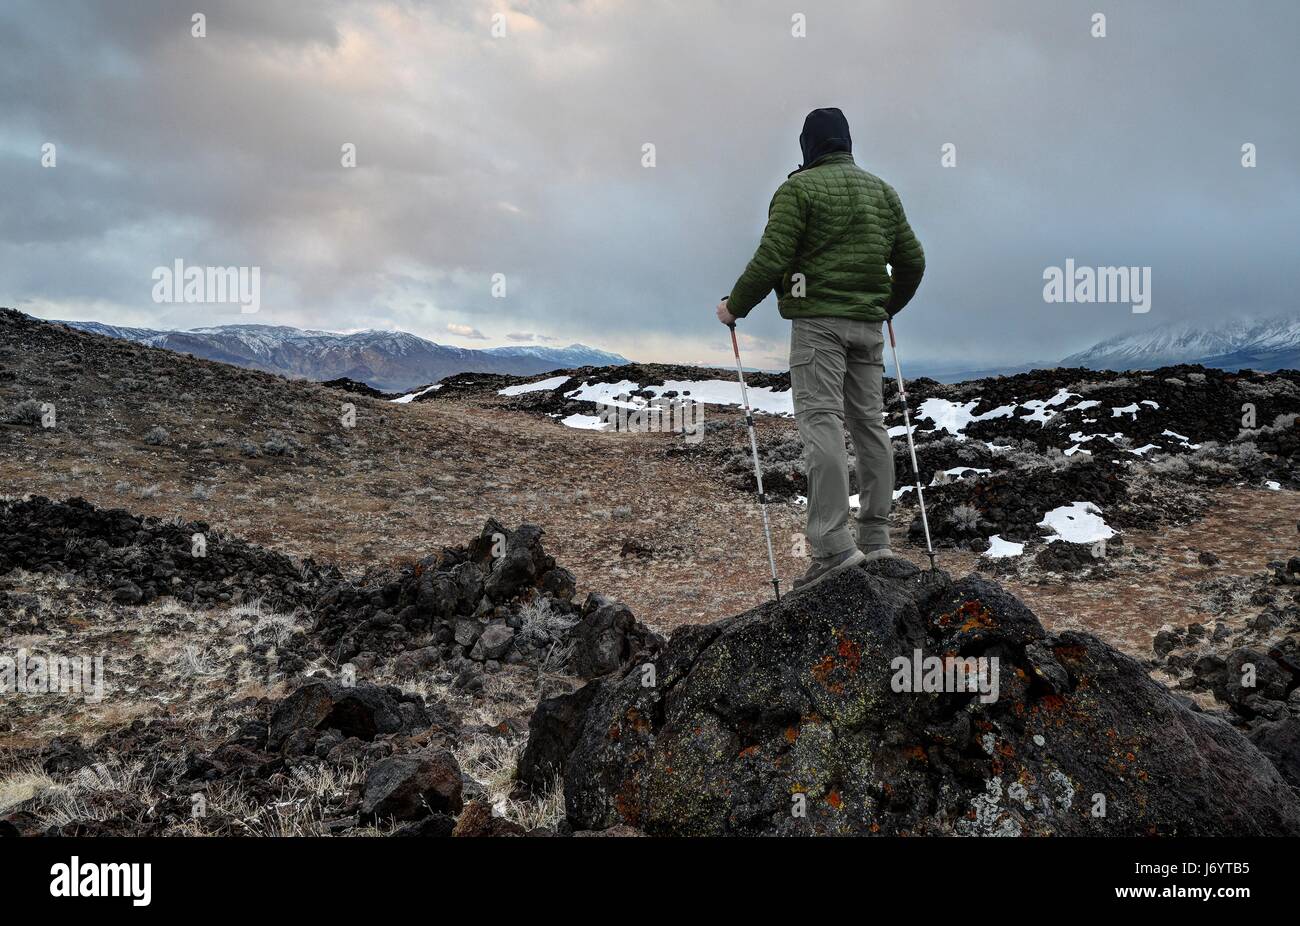 Escursionista che si trova sulle colline vulcaniche, Sierra Nevada Mountains, Inyo National Forest, California, Stati Uniti Foto Stock